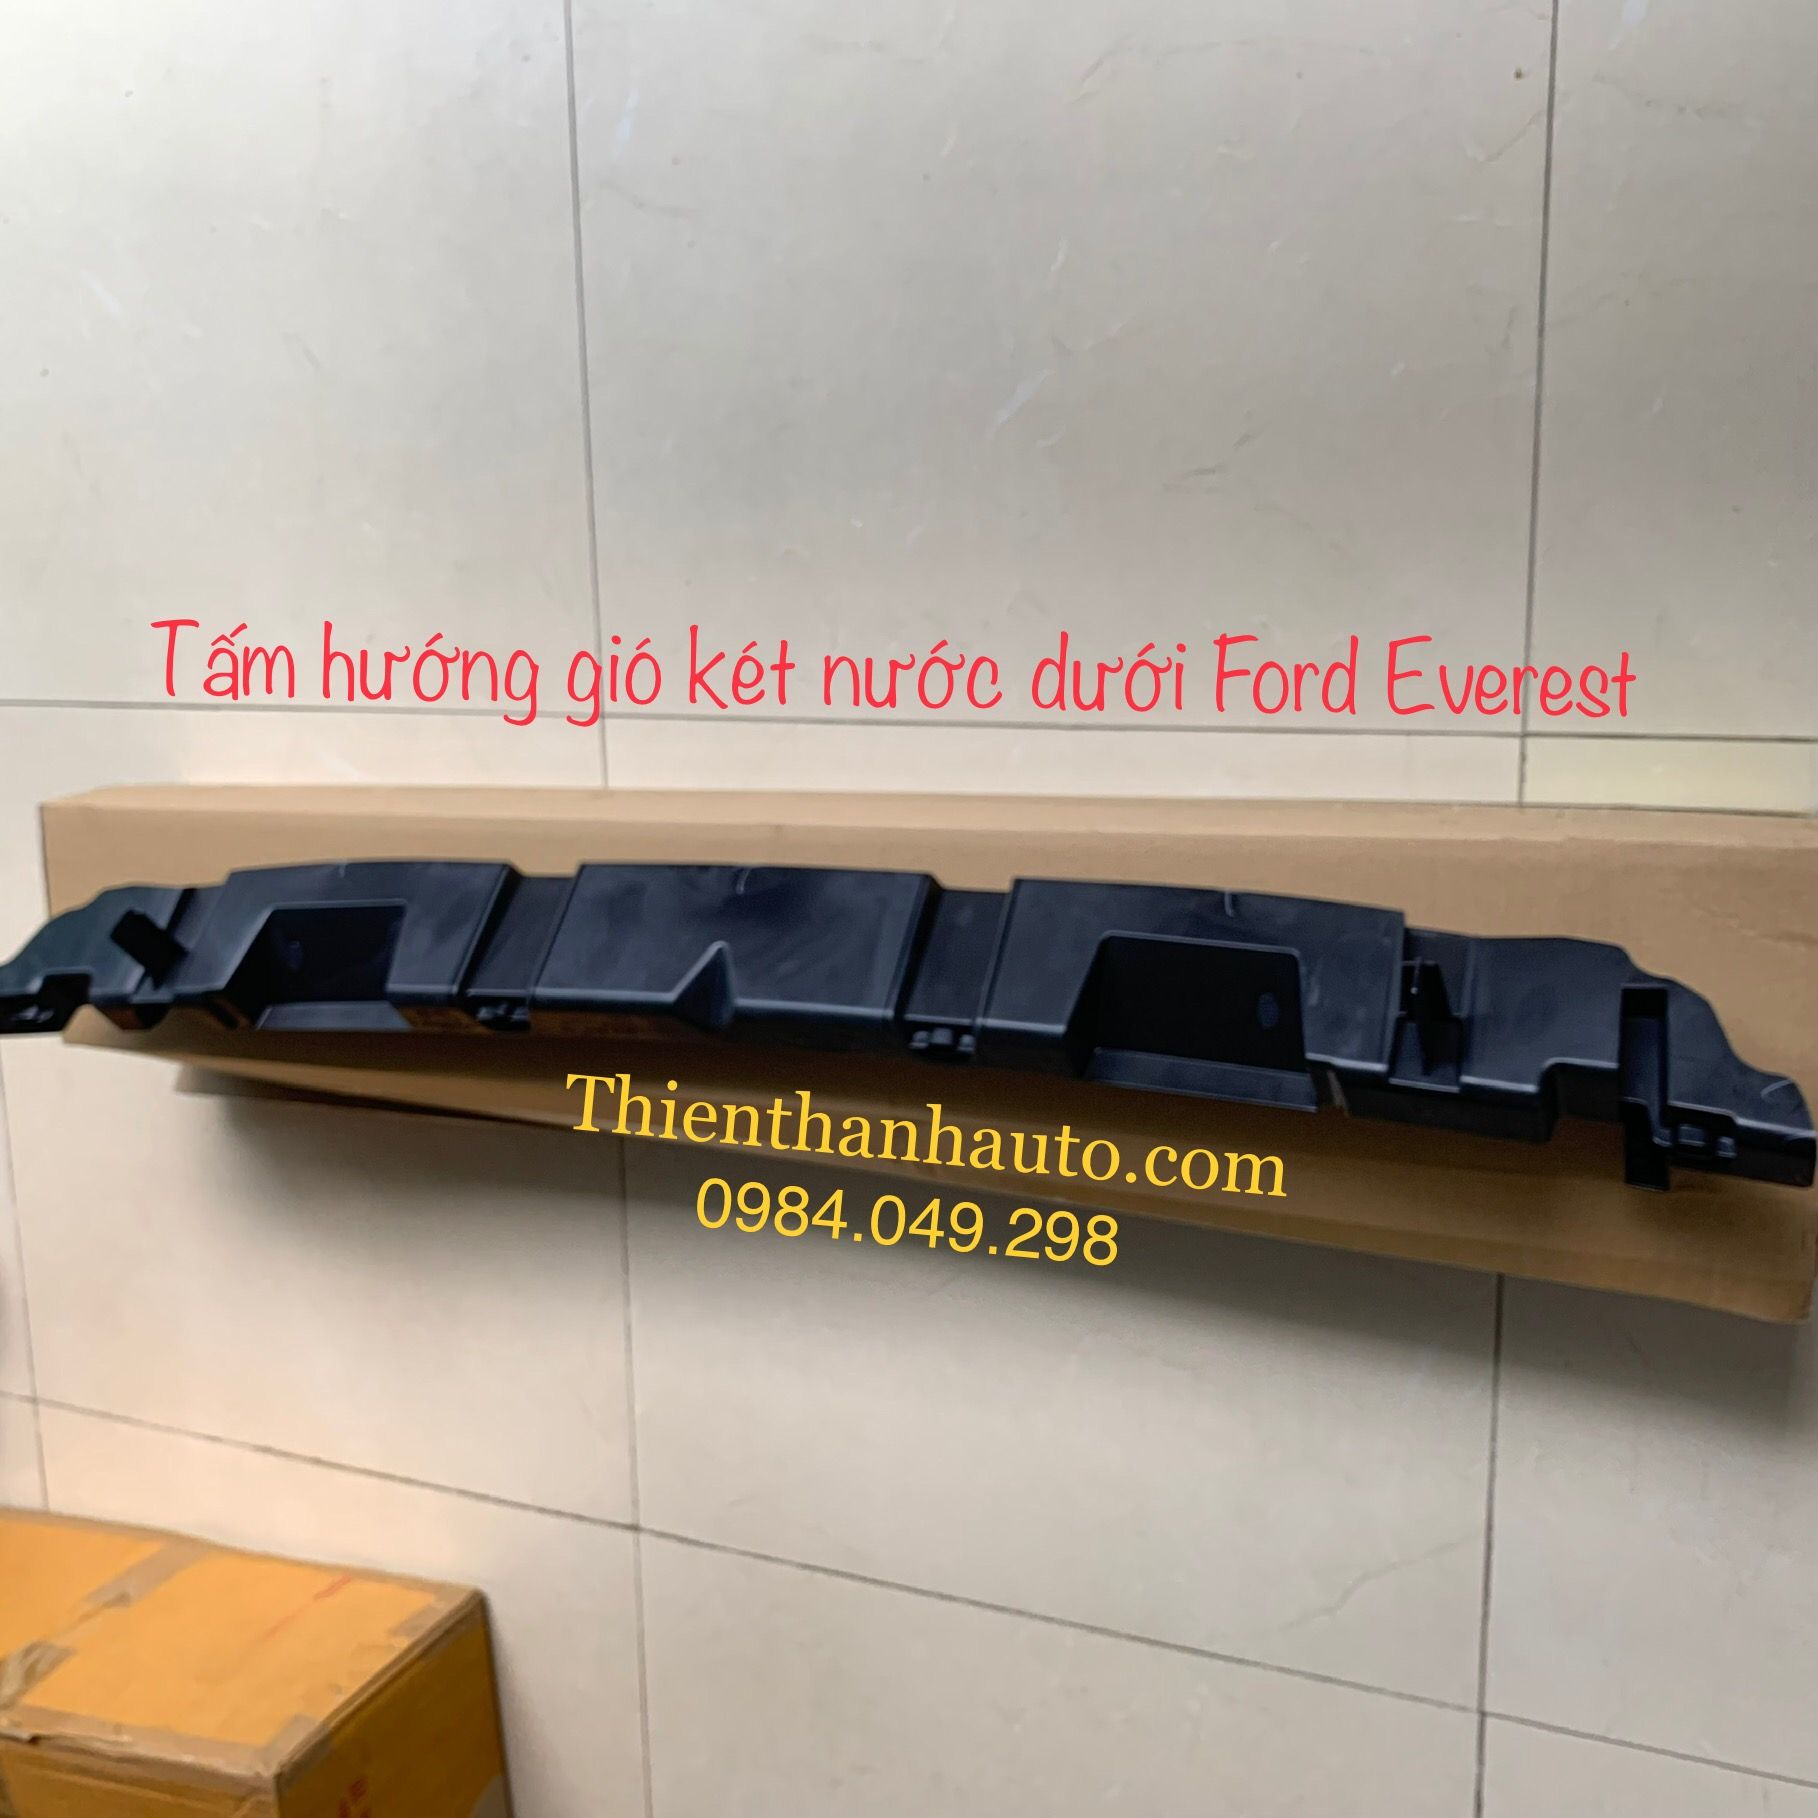 Tấm hướng gió két nước dưới Ford Everest 2018-2020 chính hãng - Phụ tùng ô tô Thiên Thanh